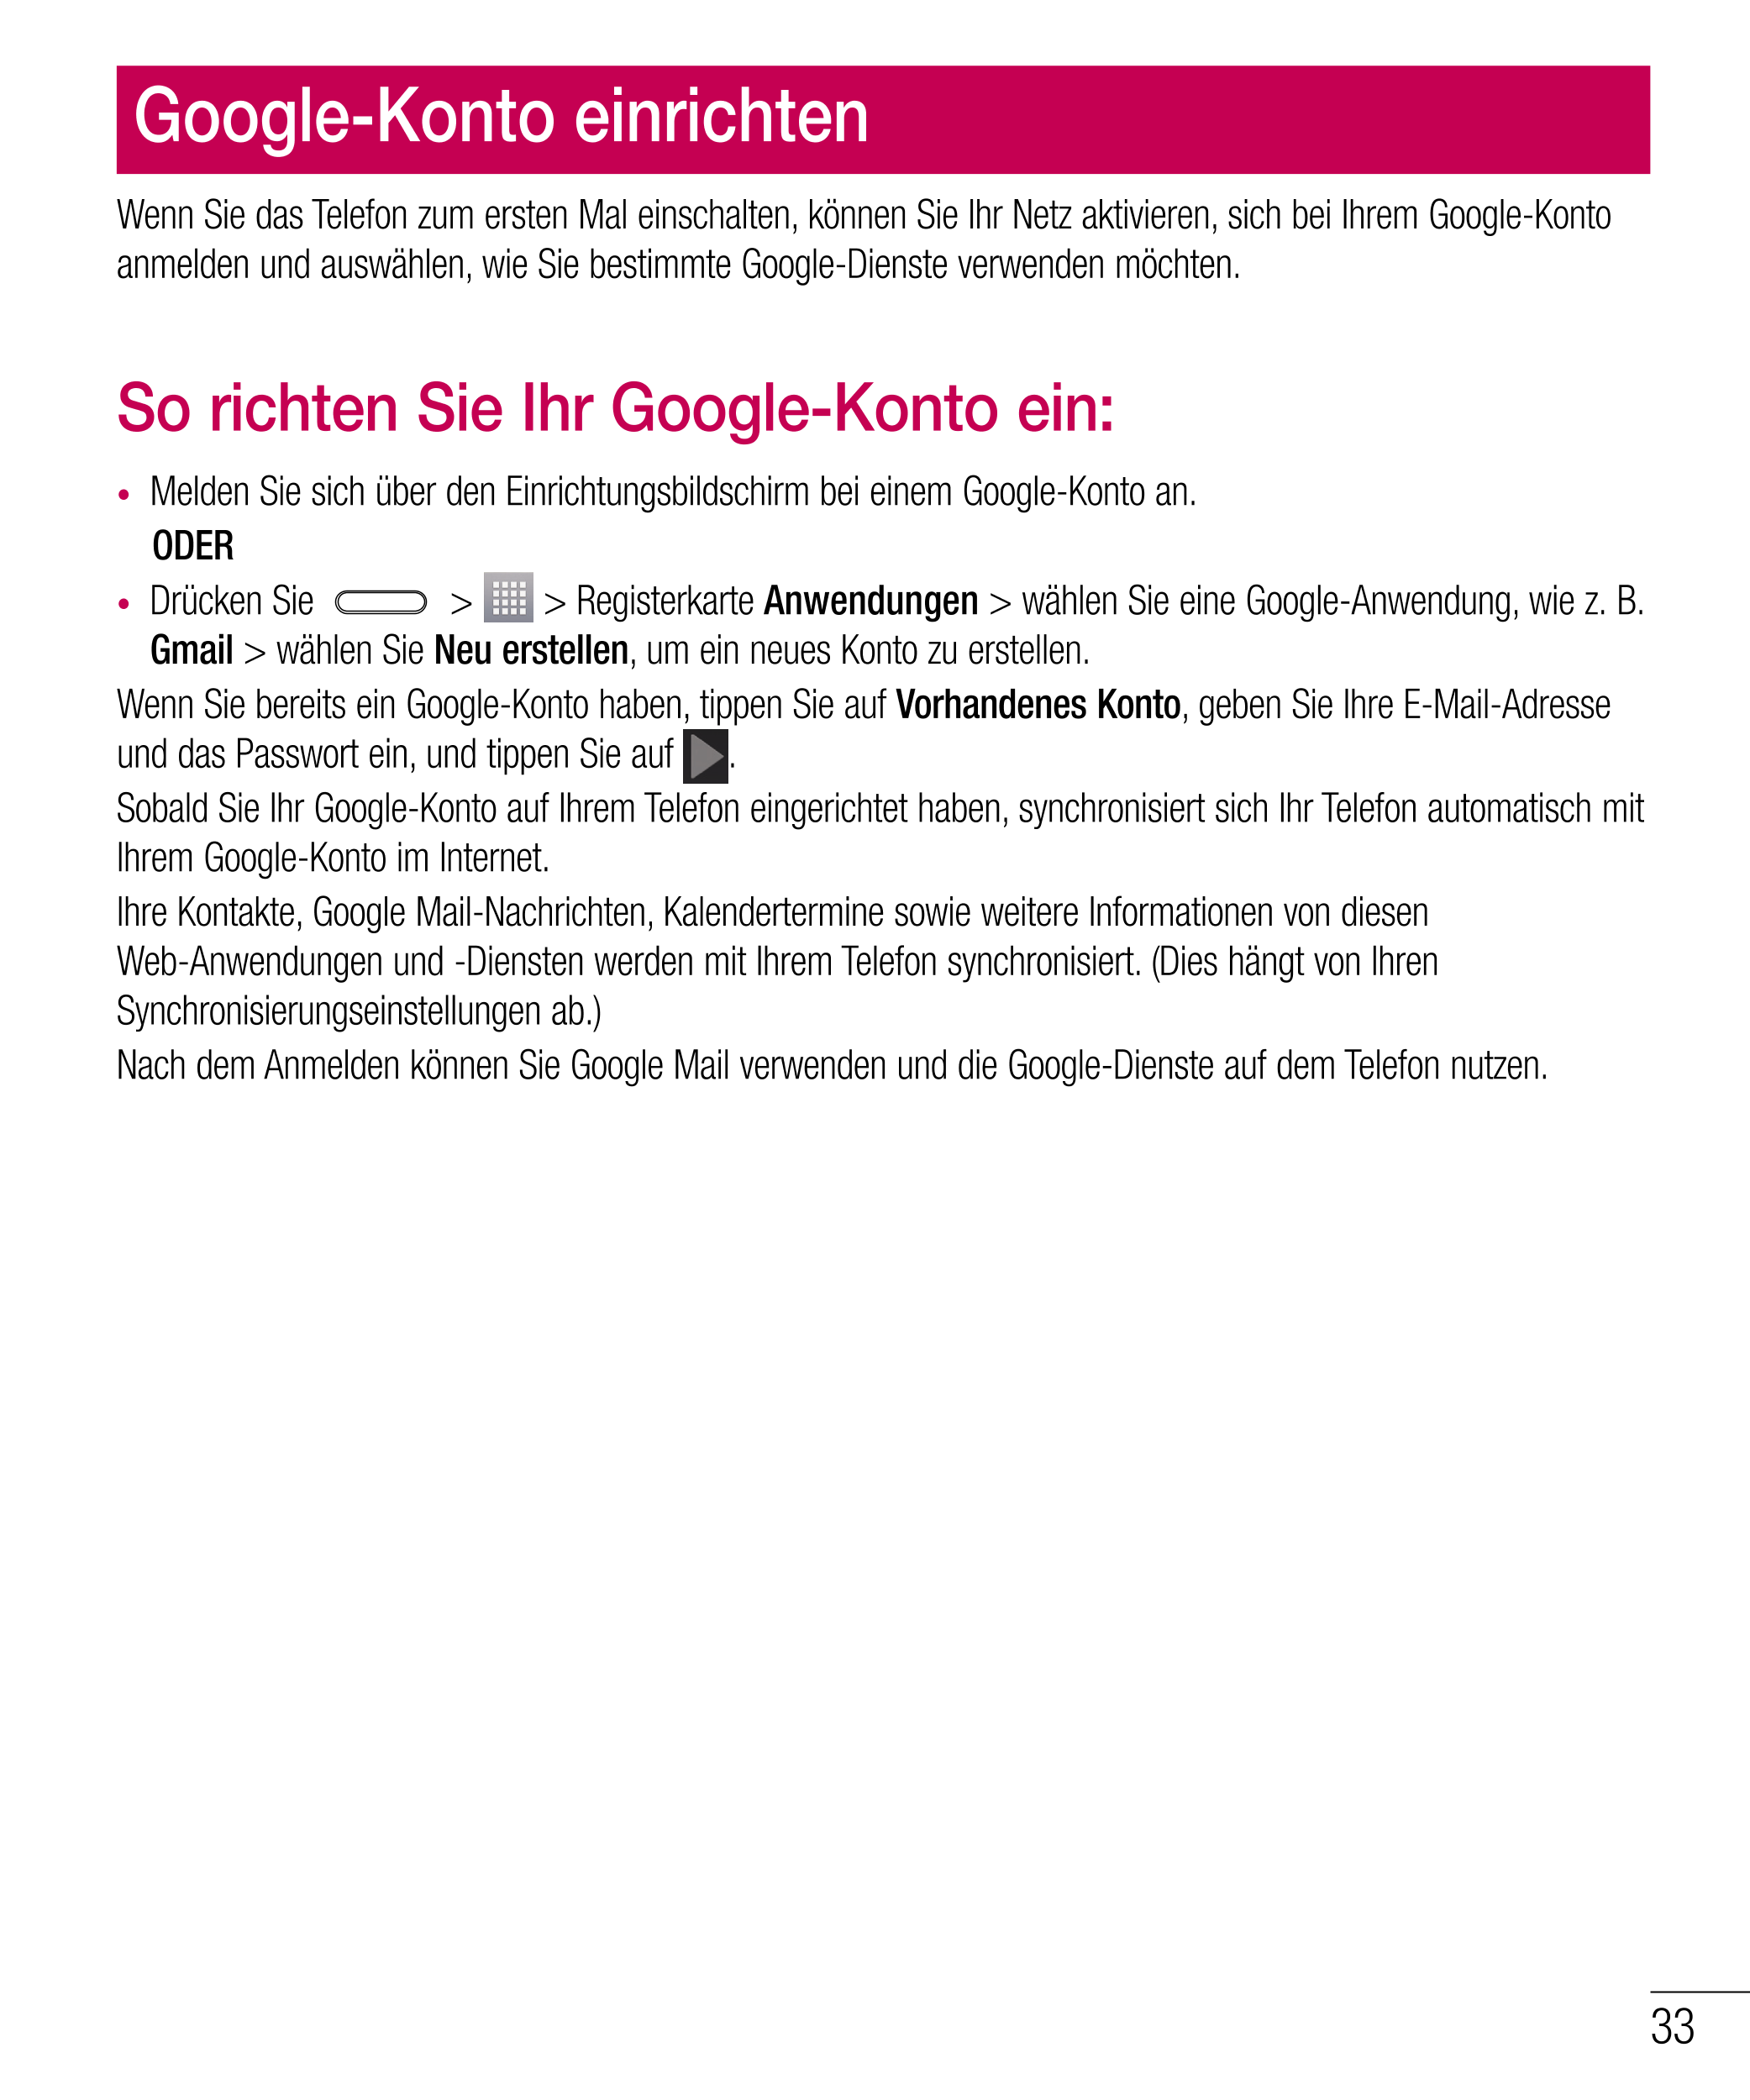 Google-Konto einrichten
Wenn Sie das Telefon zum ersten Mal einschalten, können Sie Ihr Netz aktivieren, sich bei Ihrem Google-K